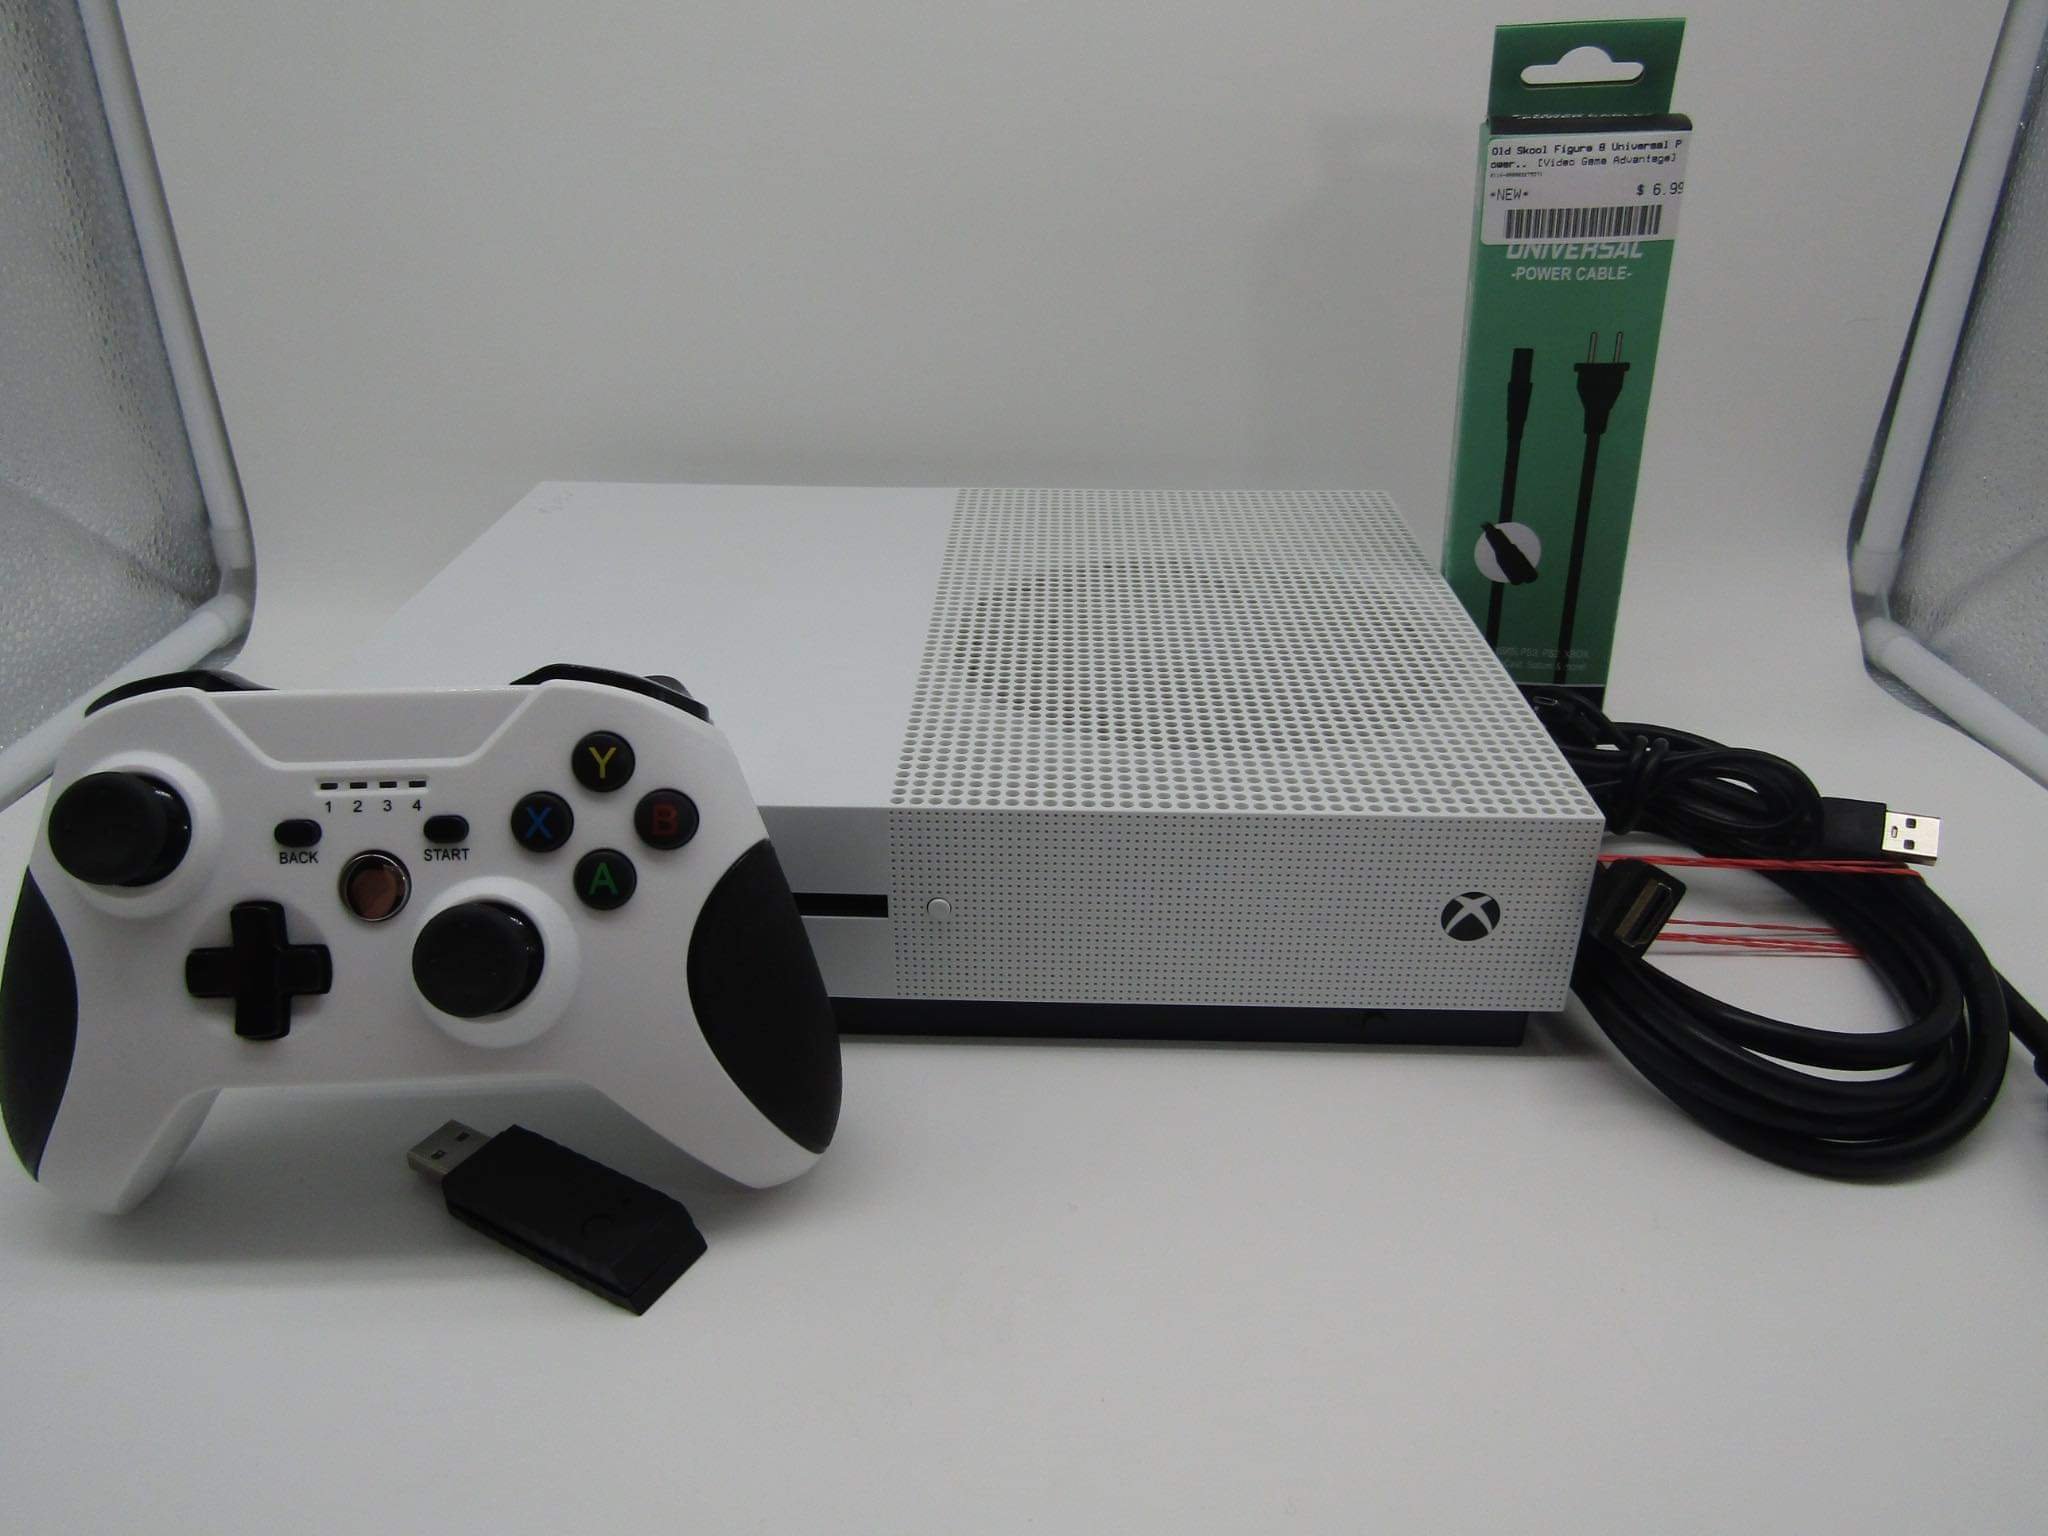 Harden doos cafetaria Xbox One 1 TB Console - Retro Jakes's